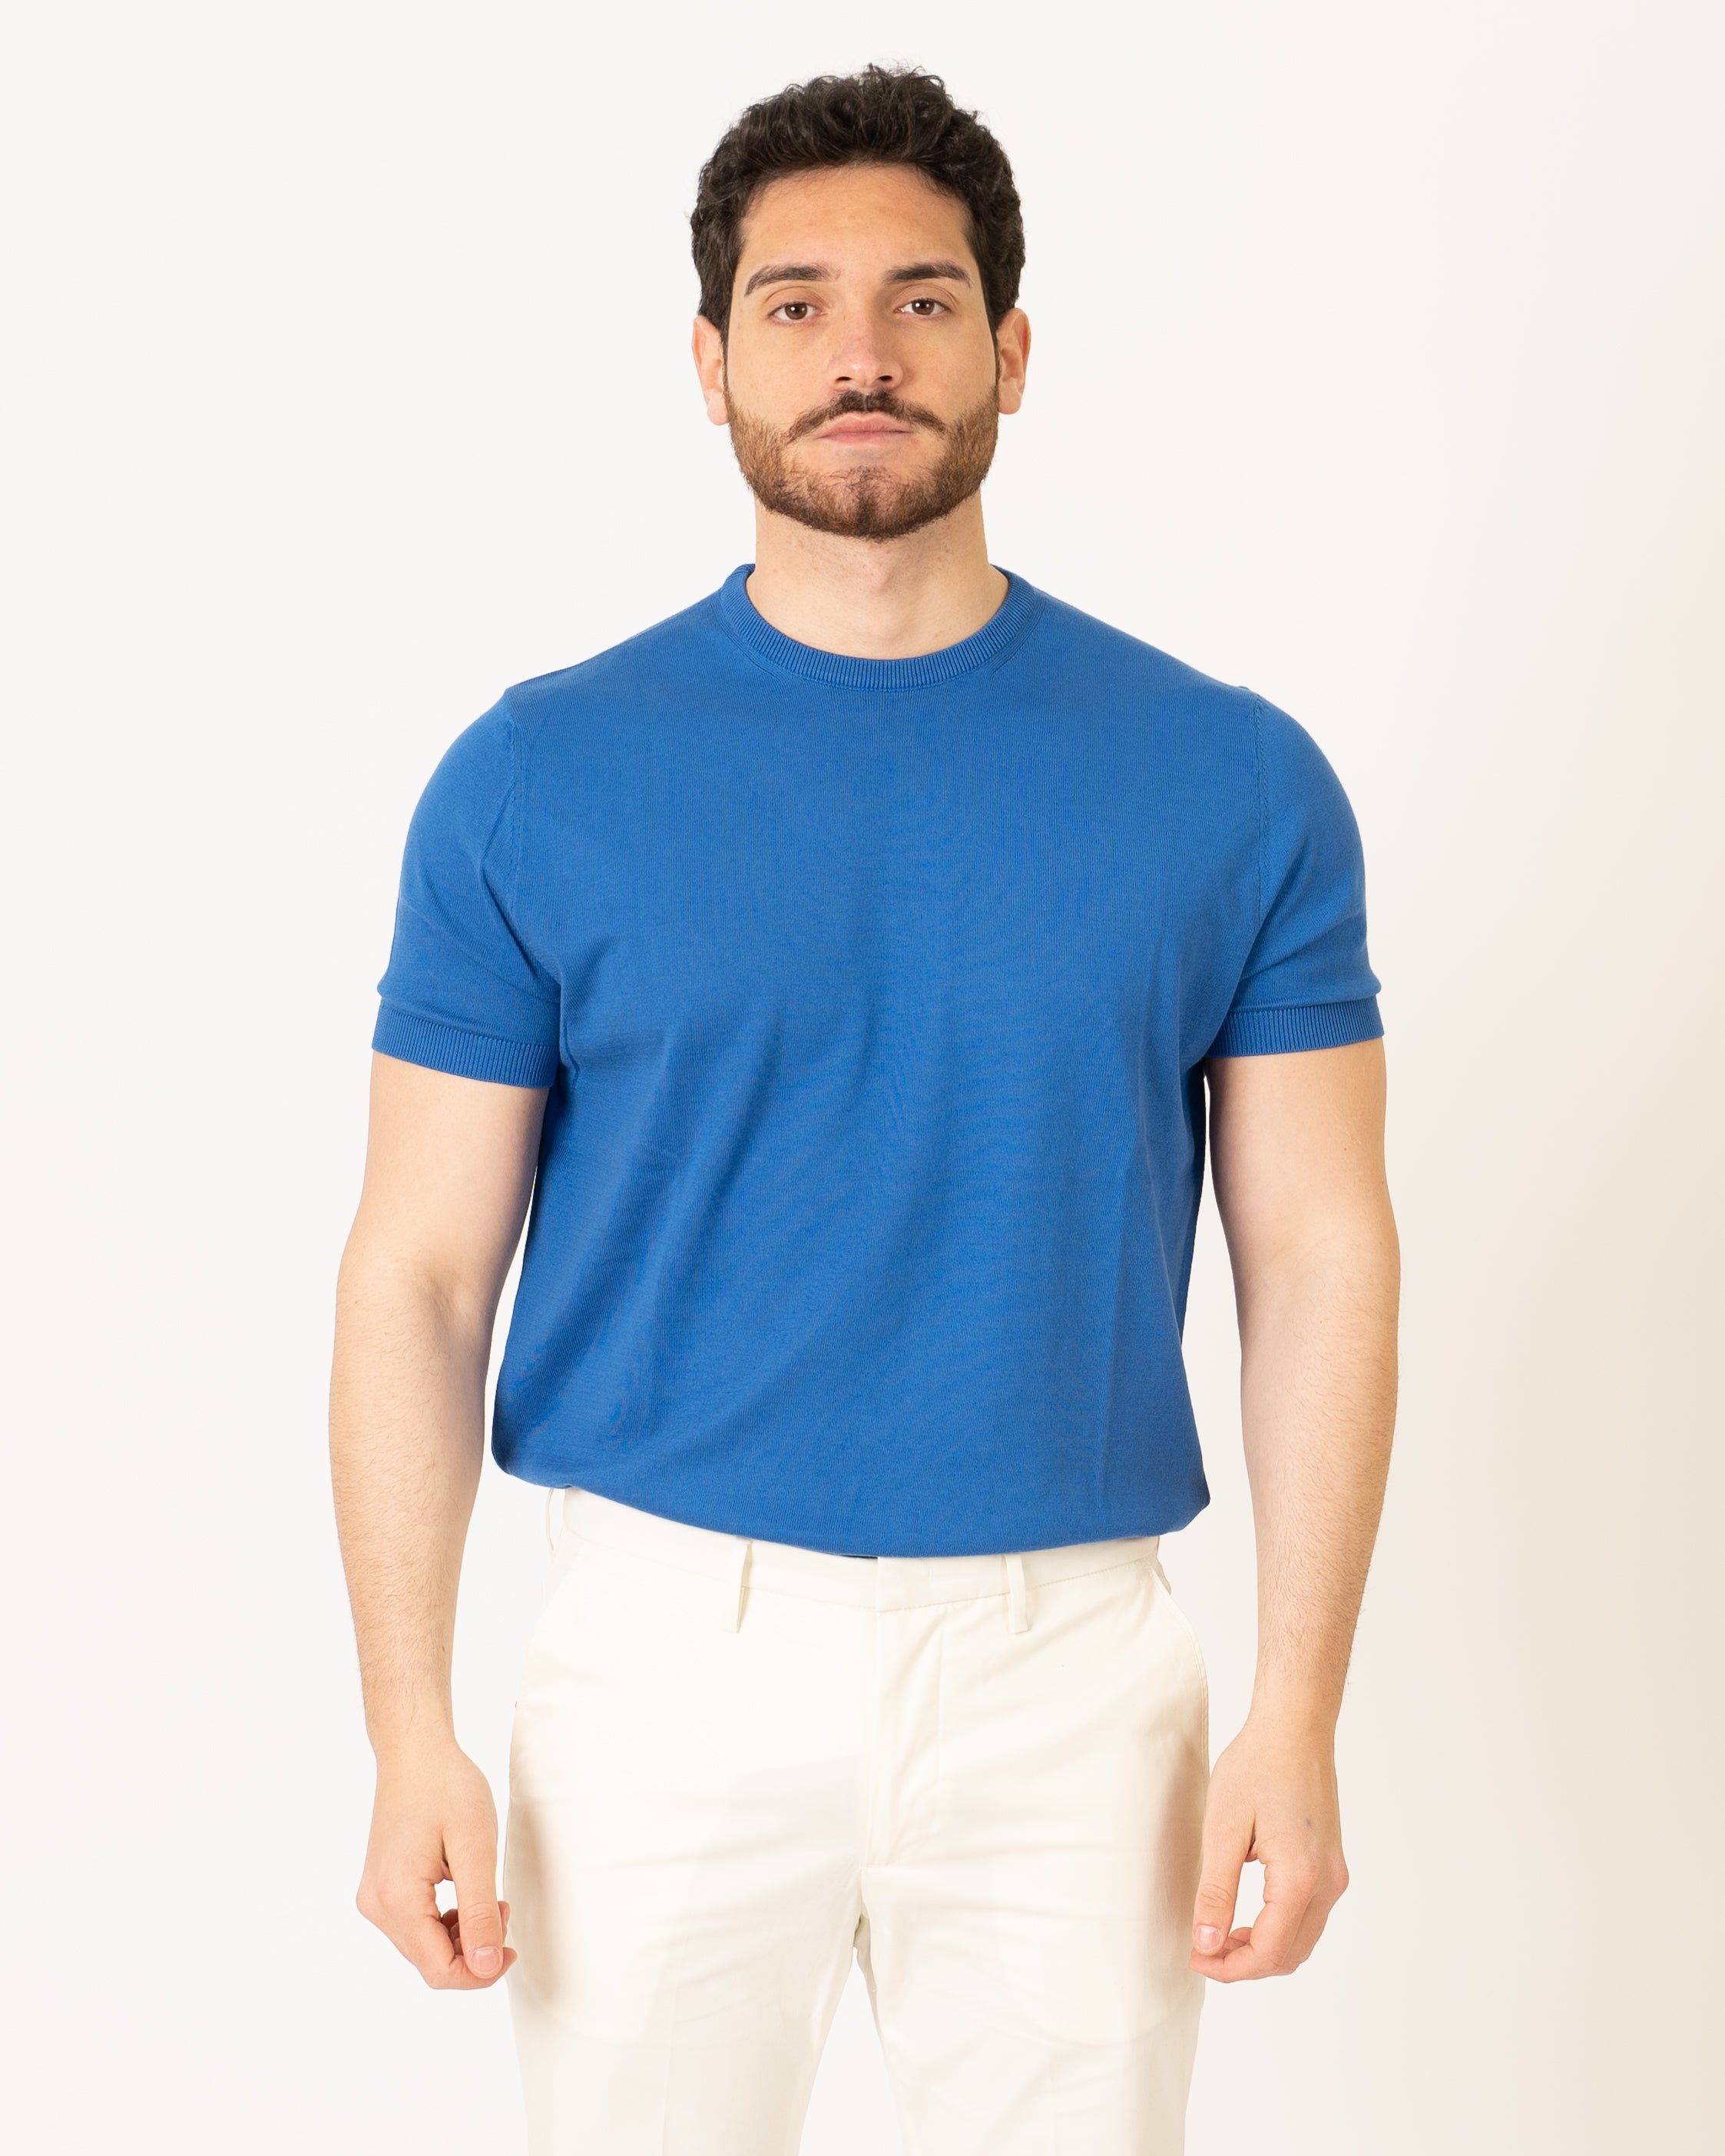 T-Shirt Filo Bluette product